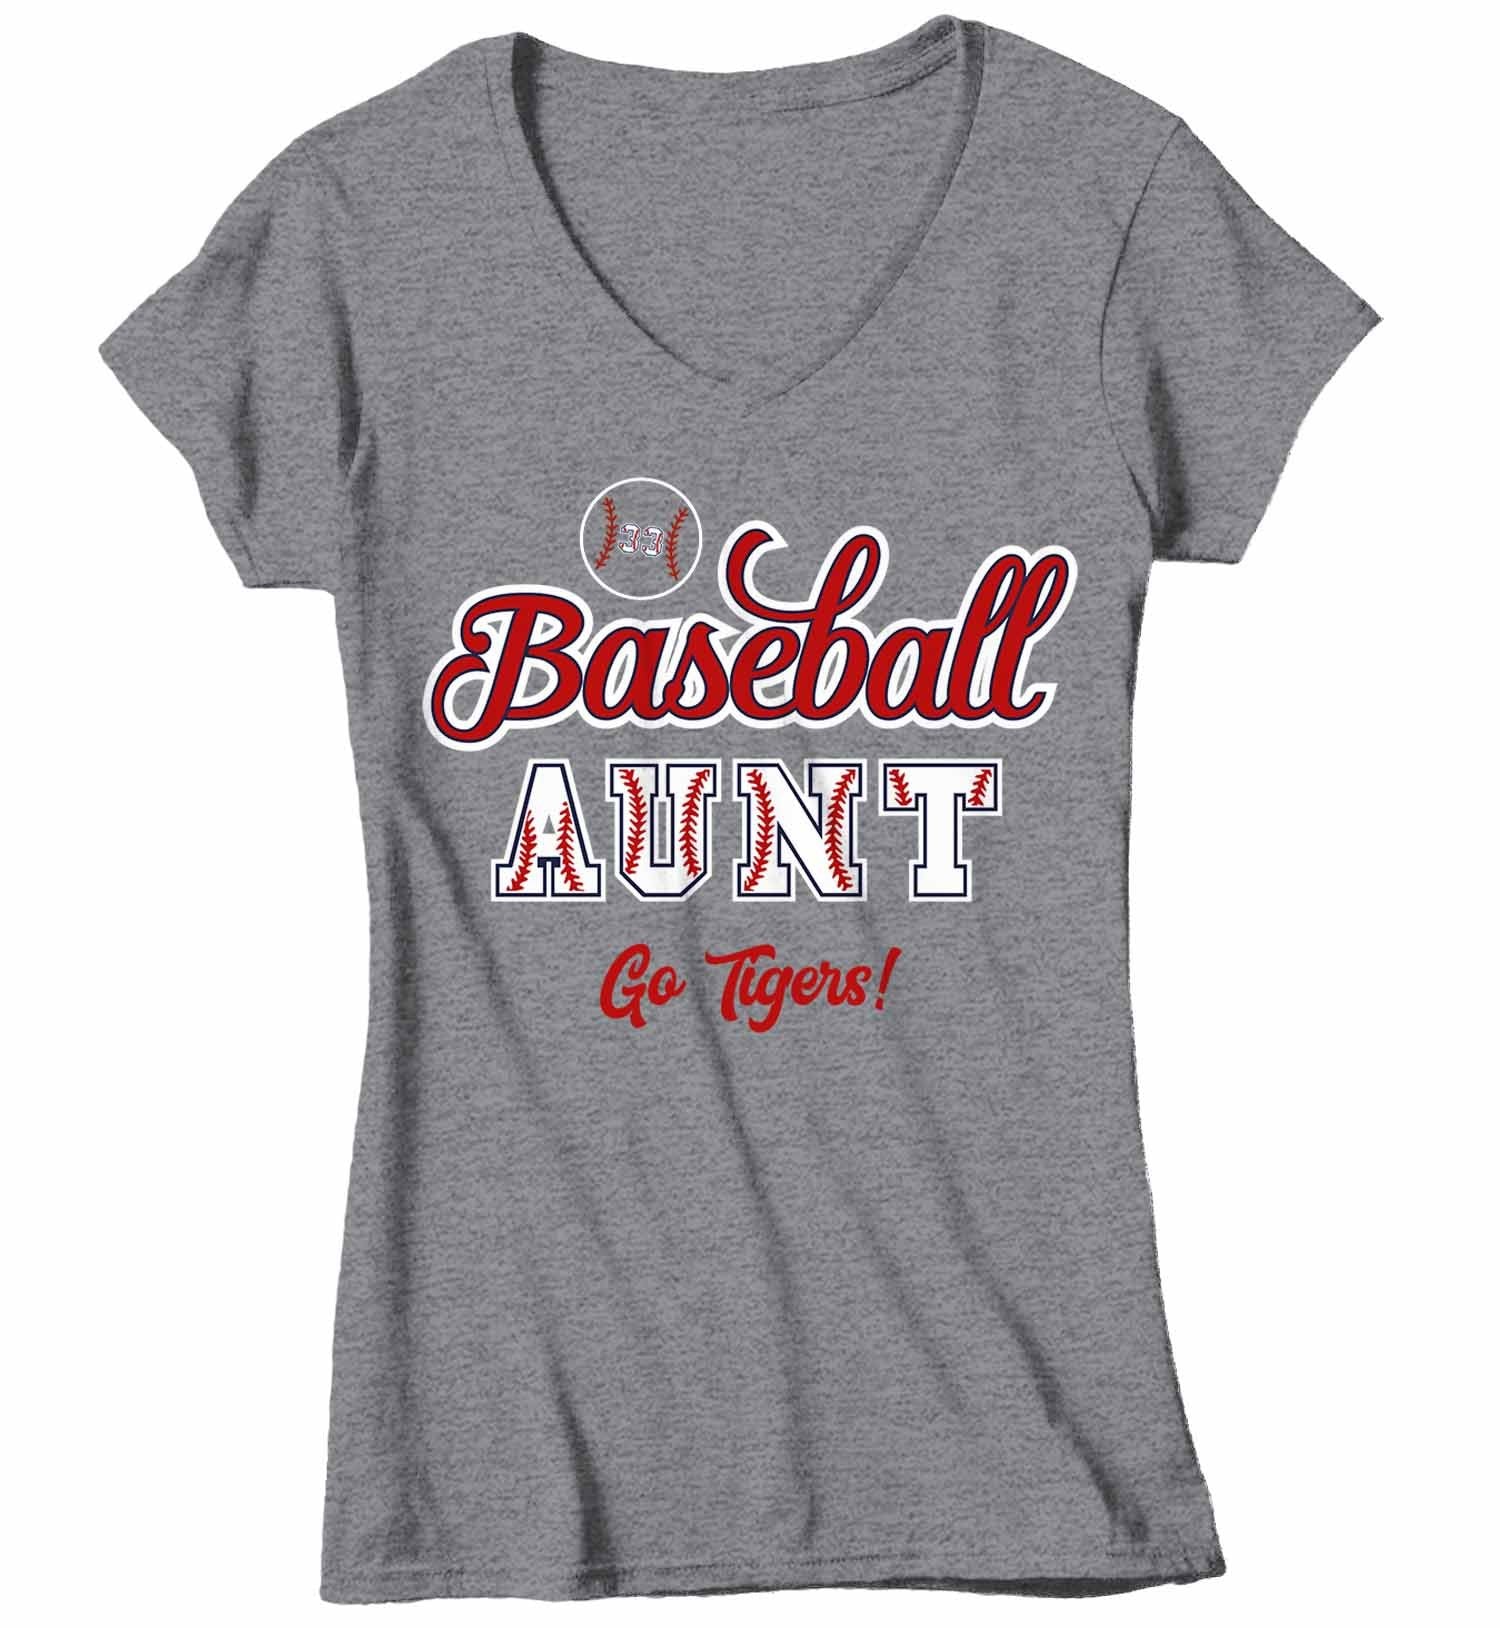 custom baseball shirts for women